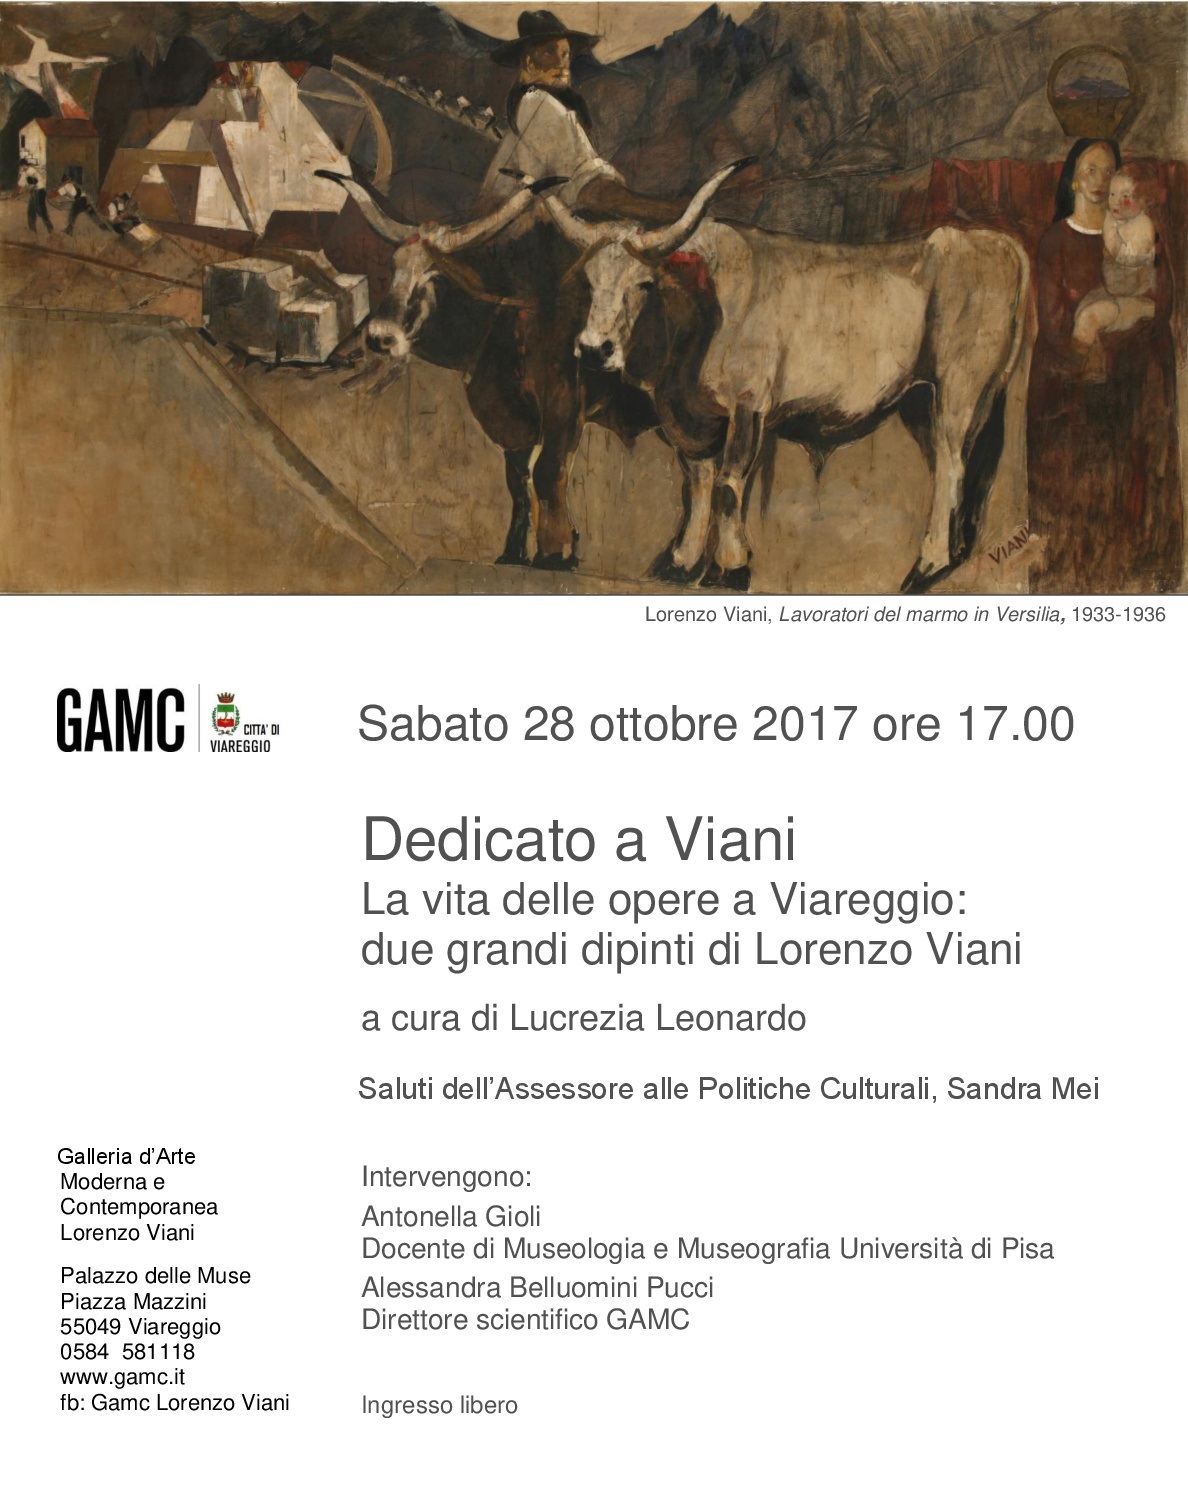 GAMC - Galleria di Arte Moderna - Mostra : La vita delle opere a Viareggio, immagine